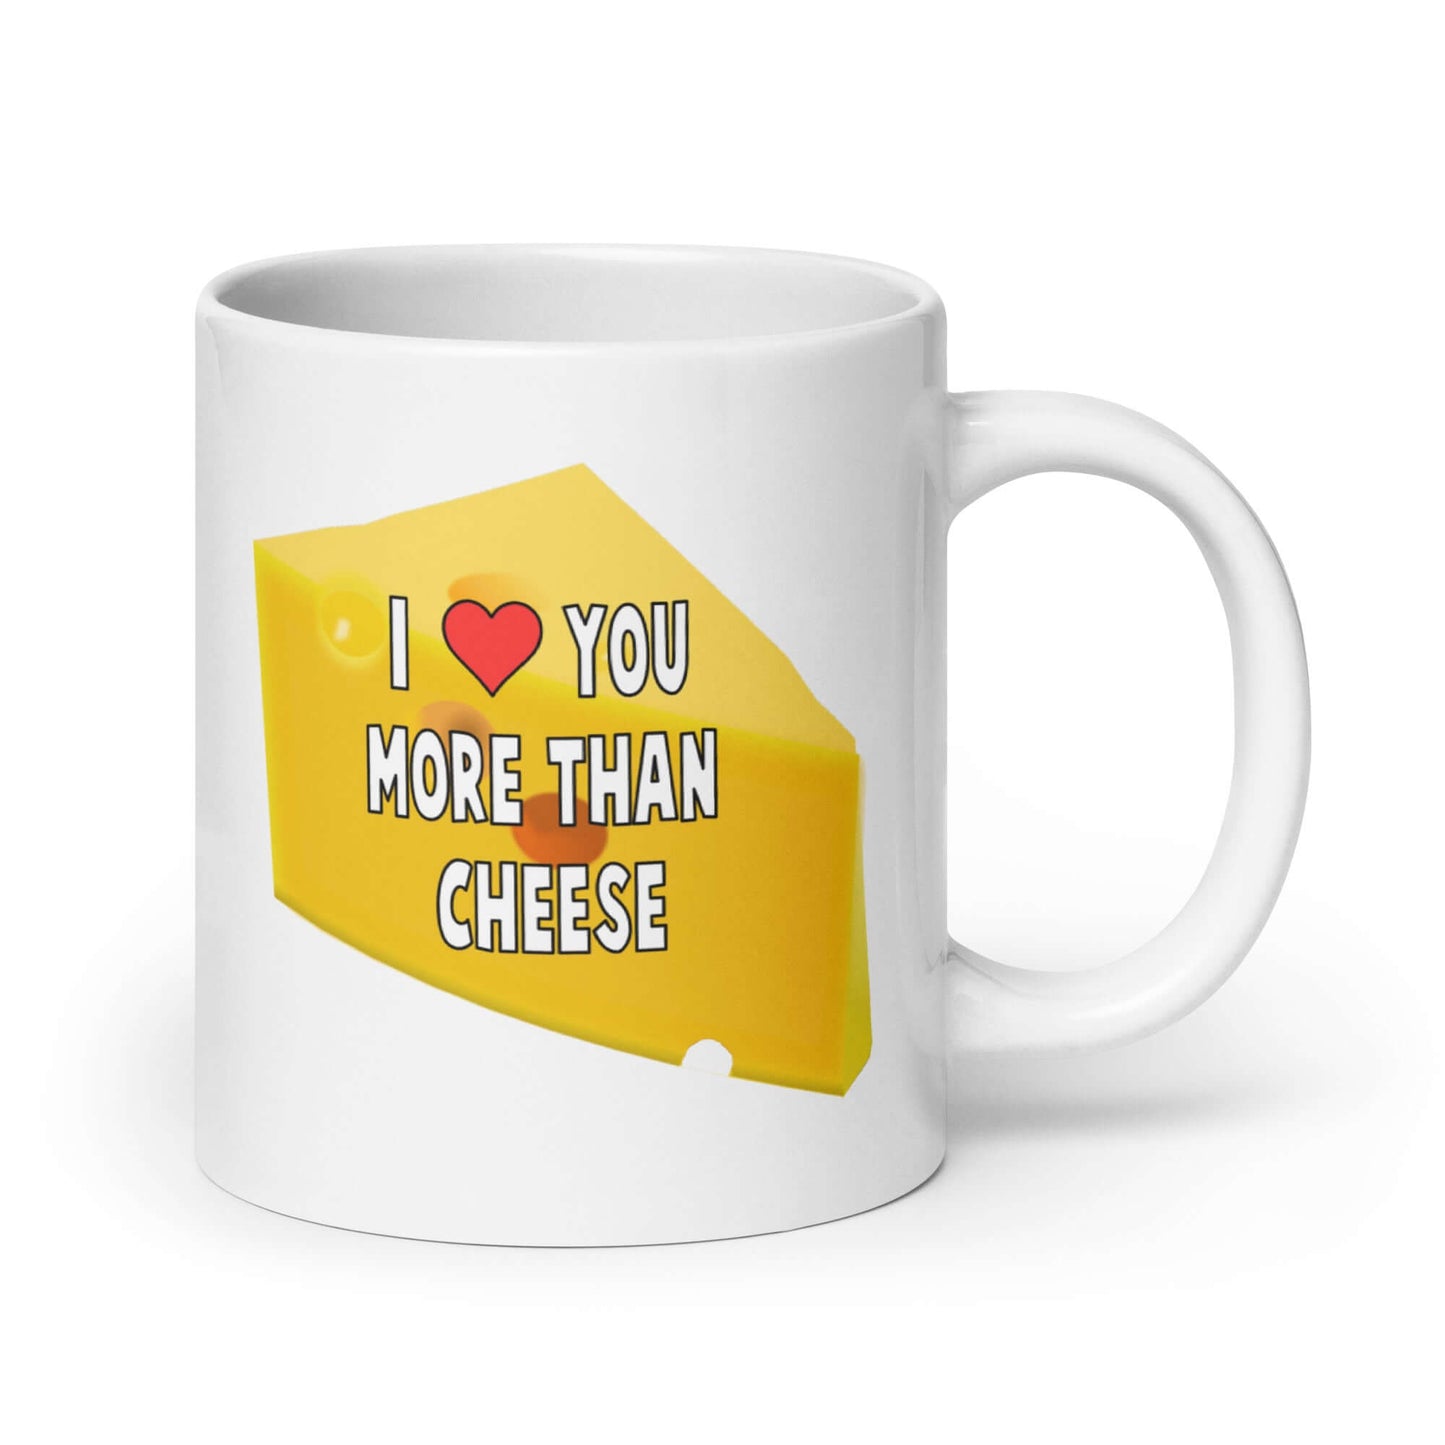 I love you more than cheese funny love mug